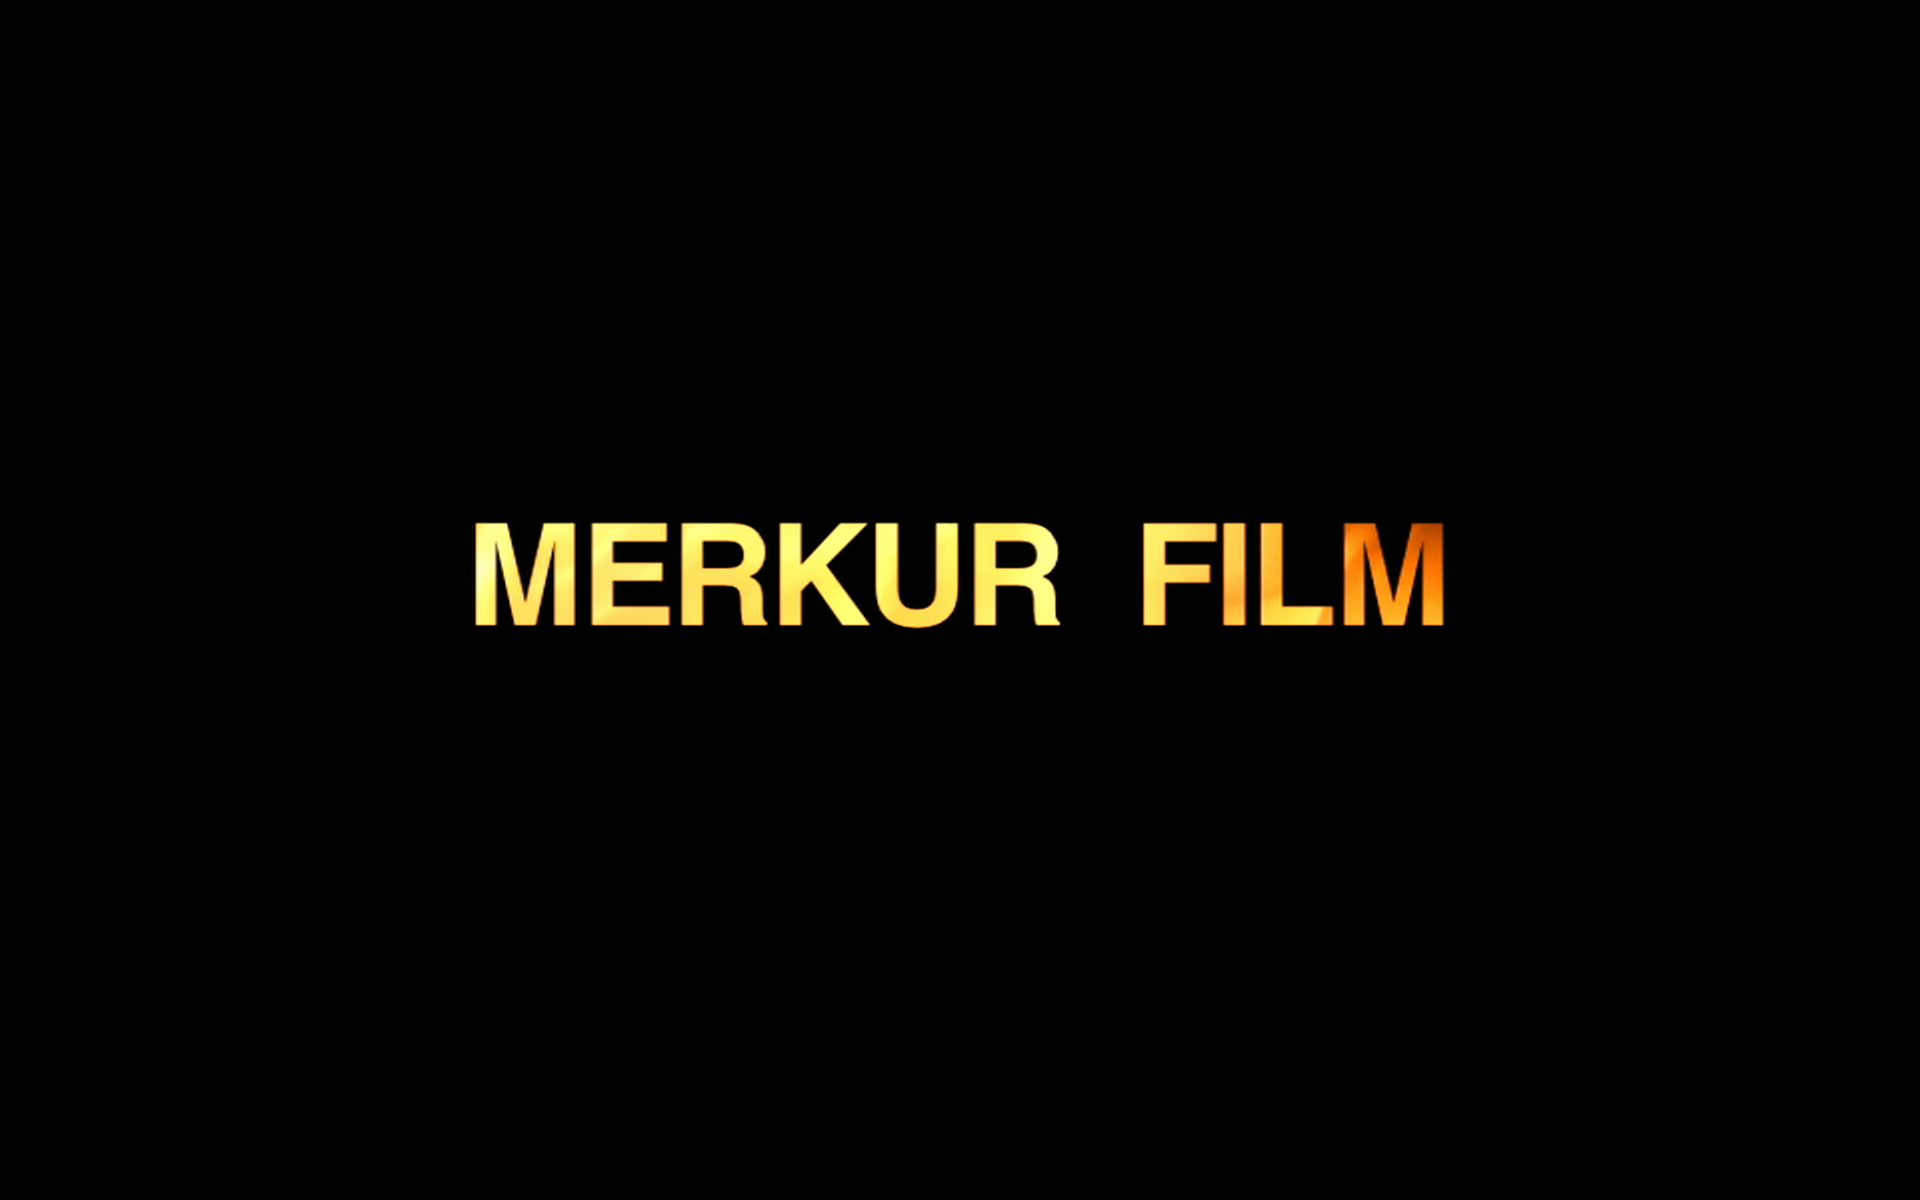 Merkur Film AS